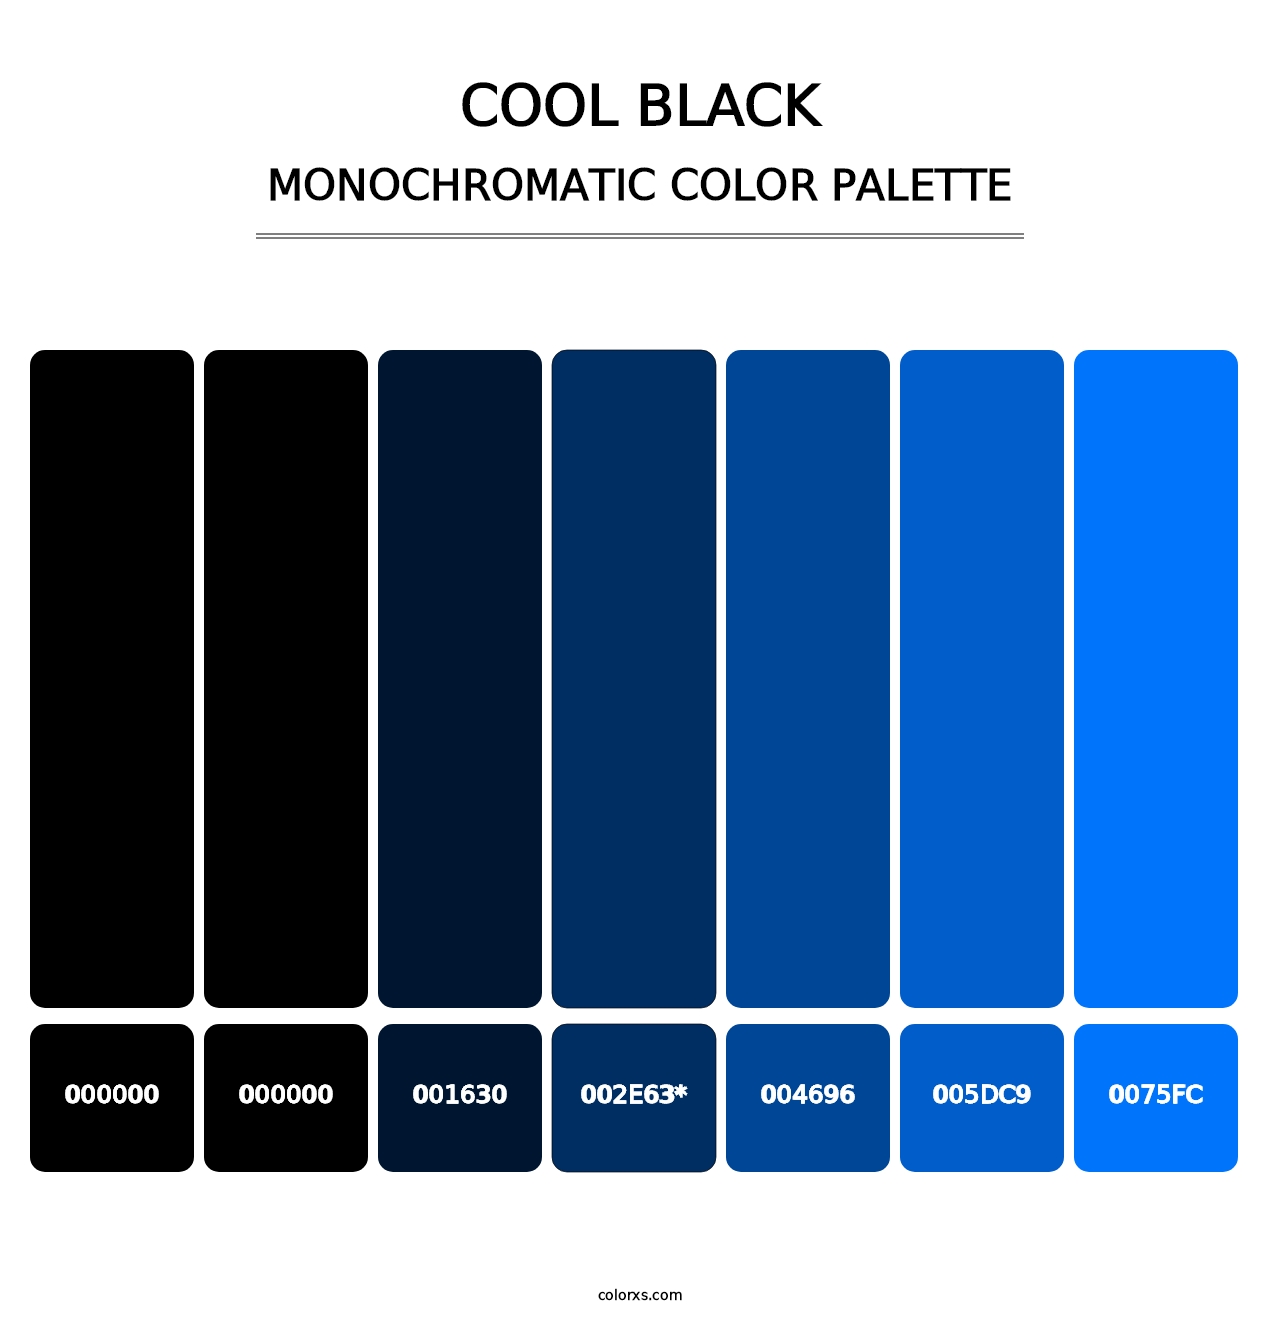 Cool Black - Monochromatic Color Palette